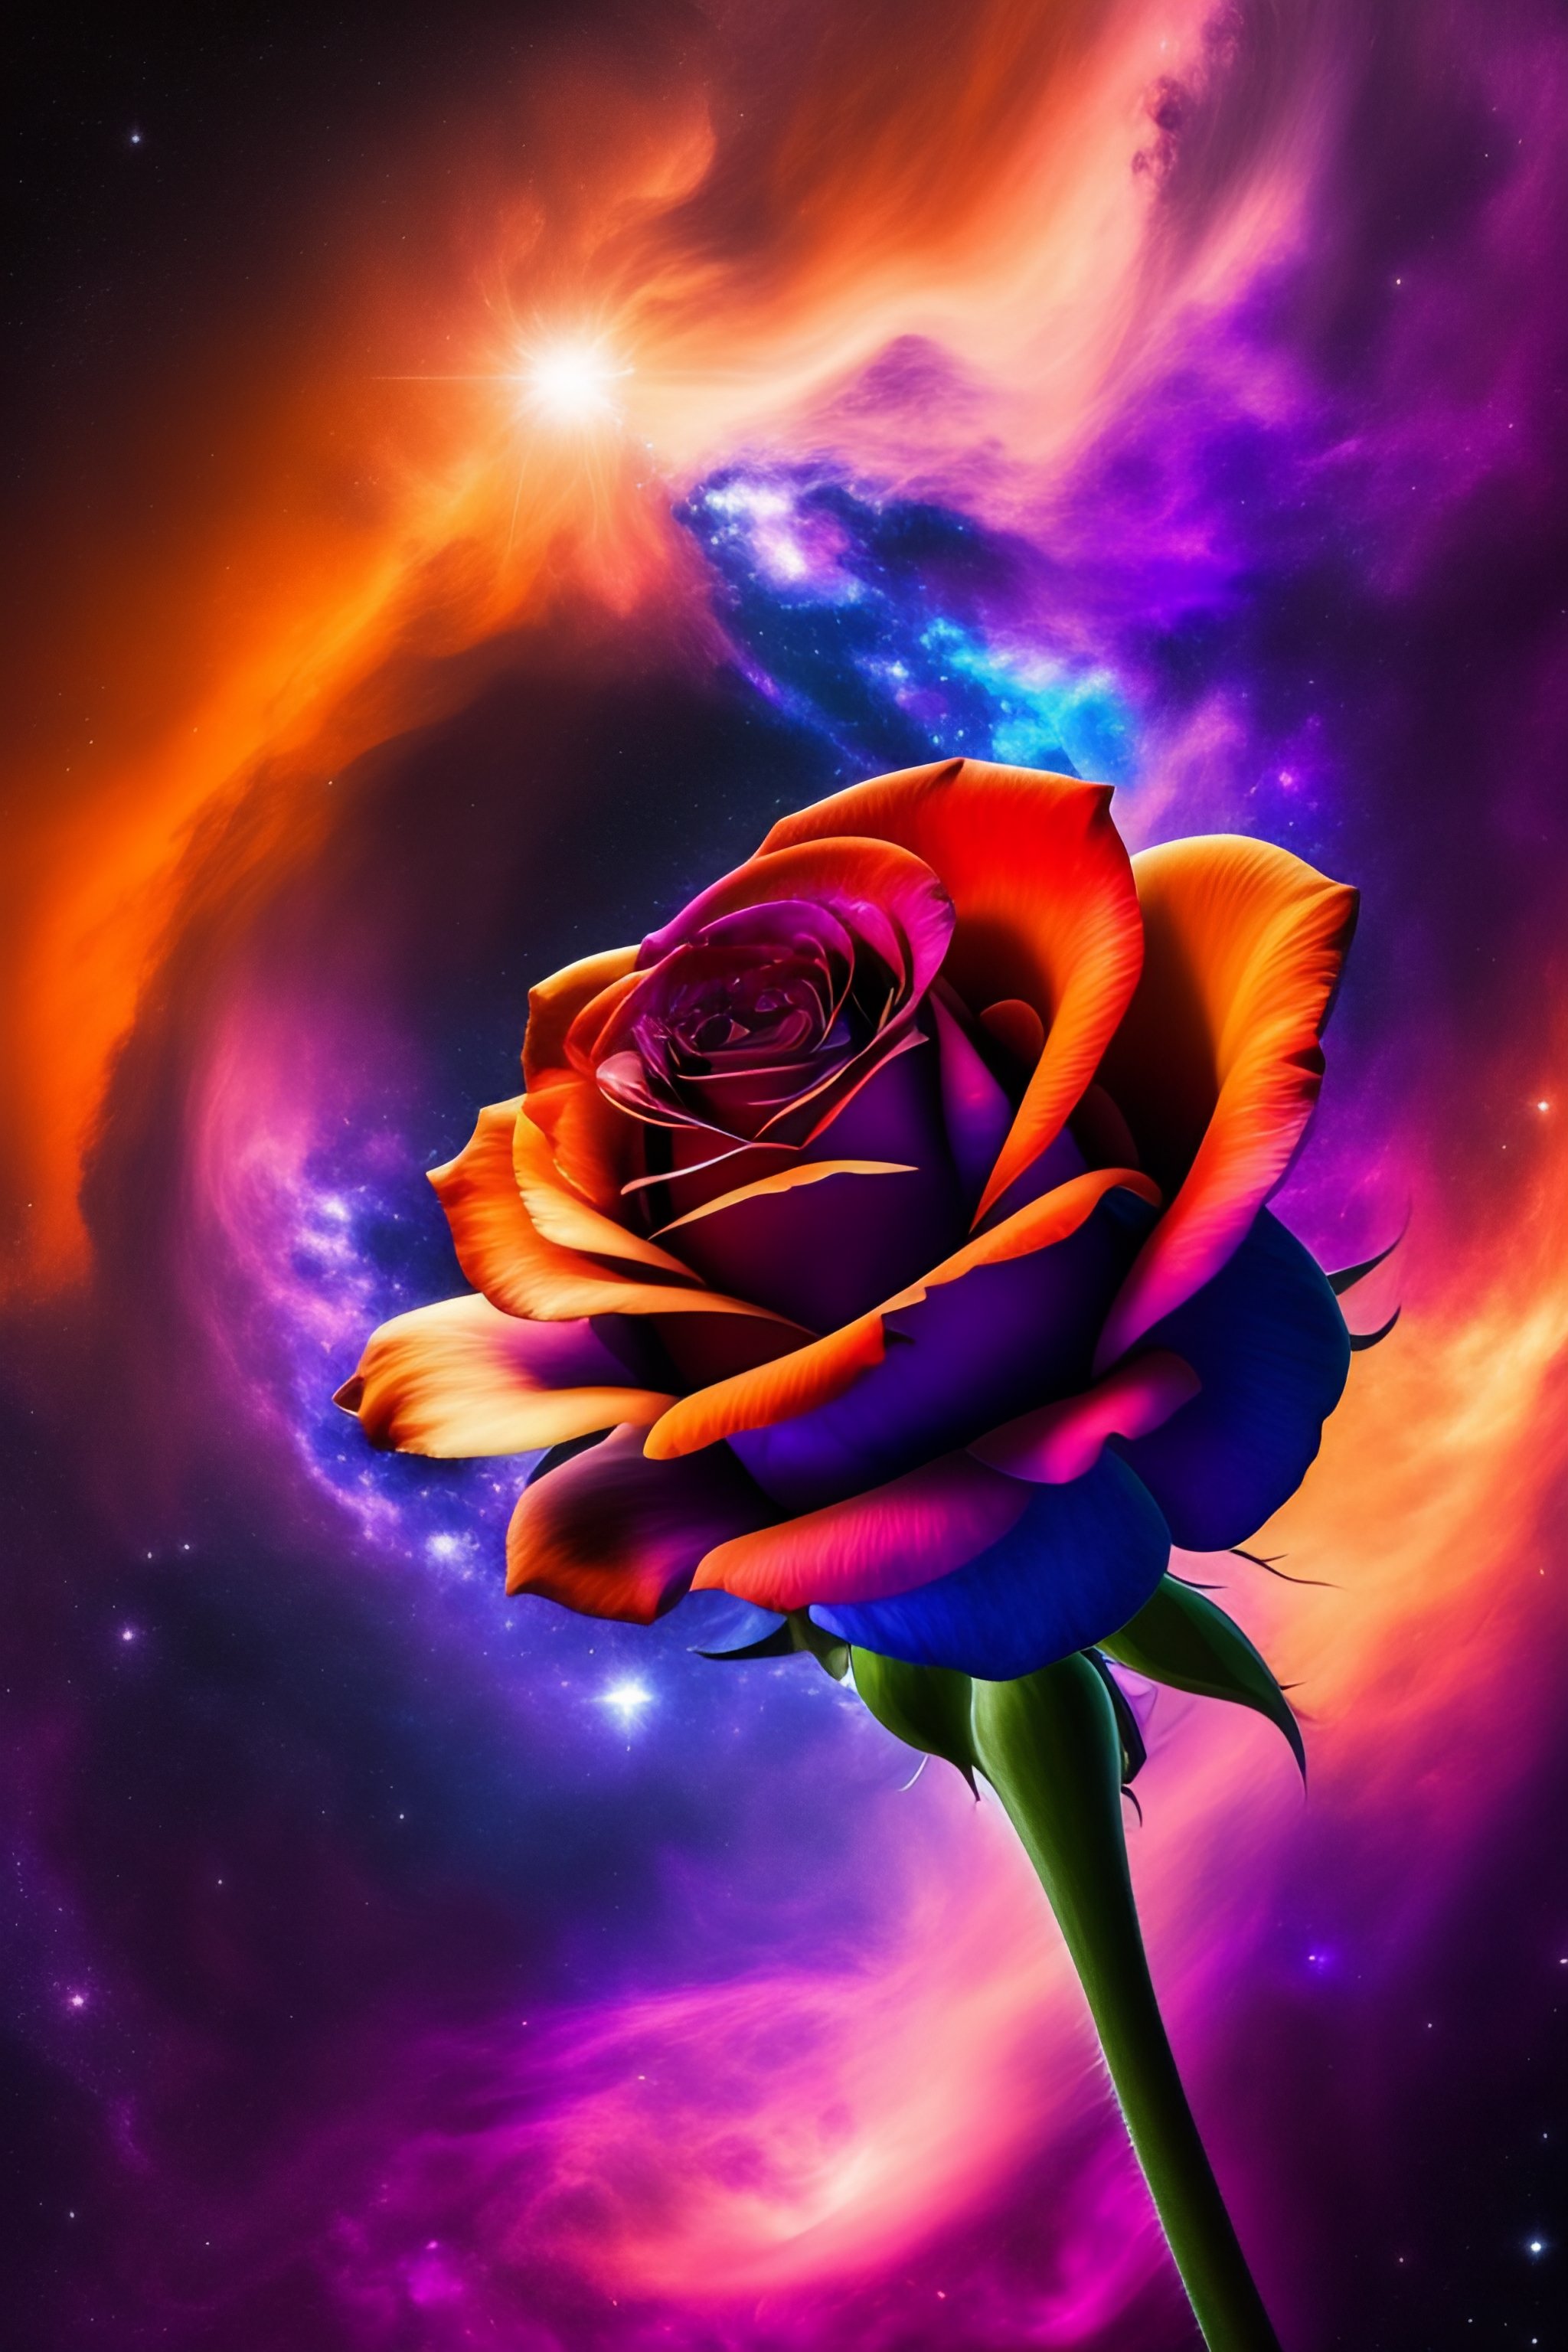 Bạn có tin rằng một bông hoa hồng đã vượt qua ranh giới của chúng ta và đến với vũ trụ sâu? Hãy chiêm ngưỡng hình ảnh tuyệt đẹp về một bông hồng trong không gian đầy điêu khắc và tinh tế. Từ hiện thực trần tục, chúng ta được đưa vào một thế giới đầy mê hoặc và sống động.